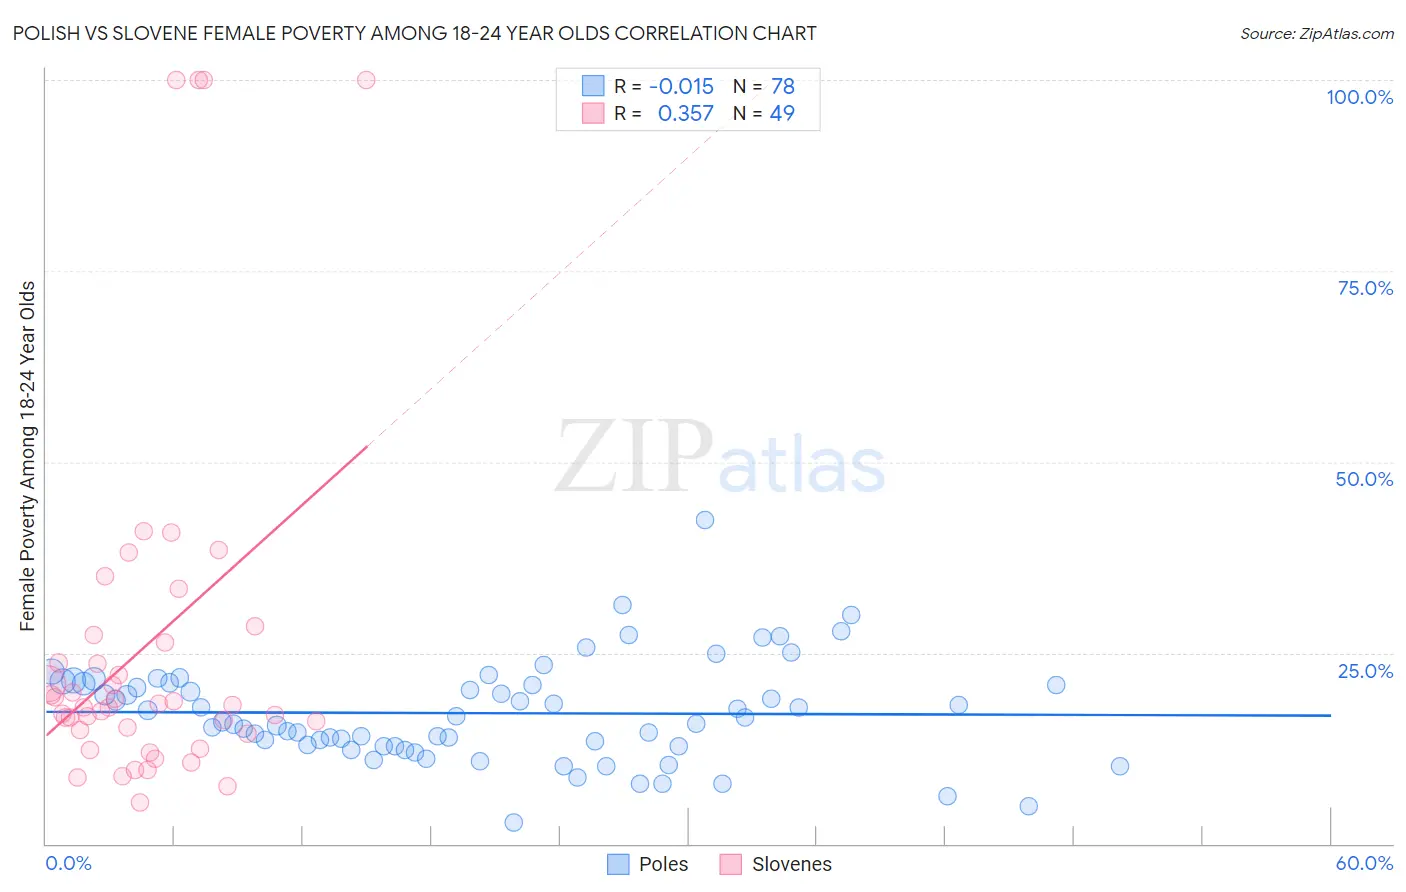 Polish vs Slovene Female Poverty Among 18-24 Year Olds